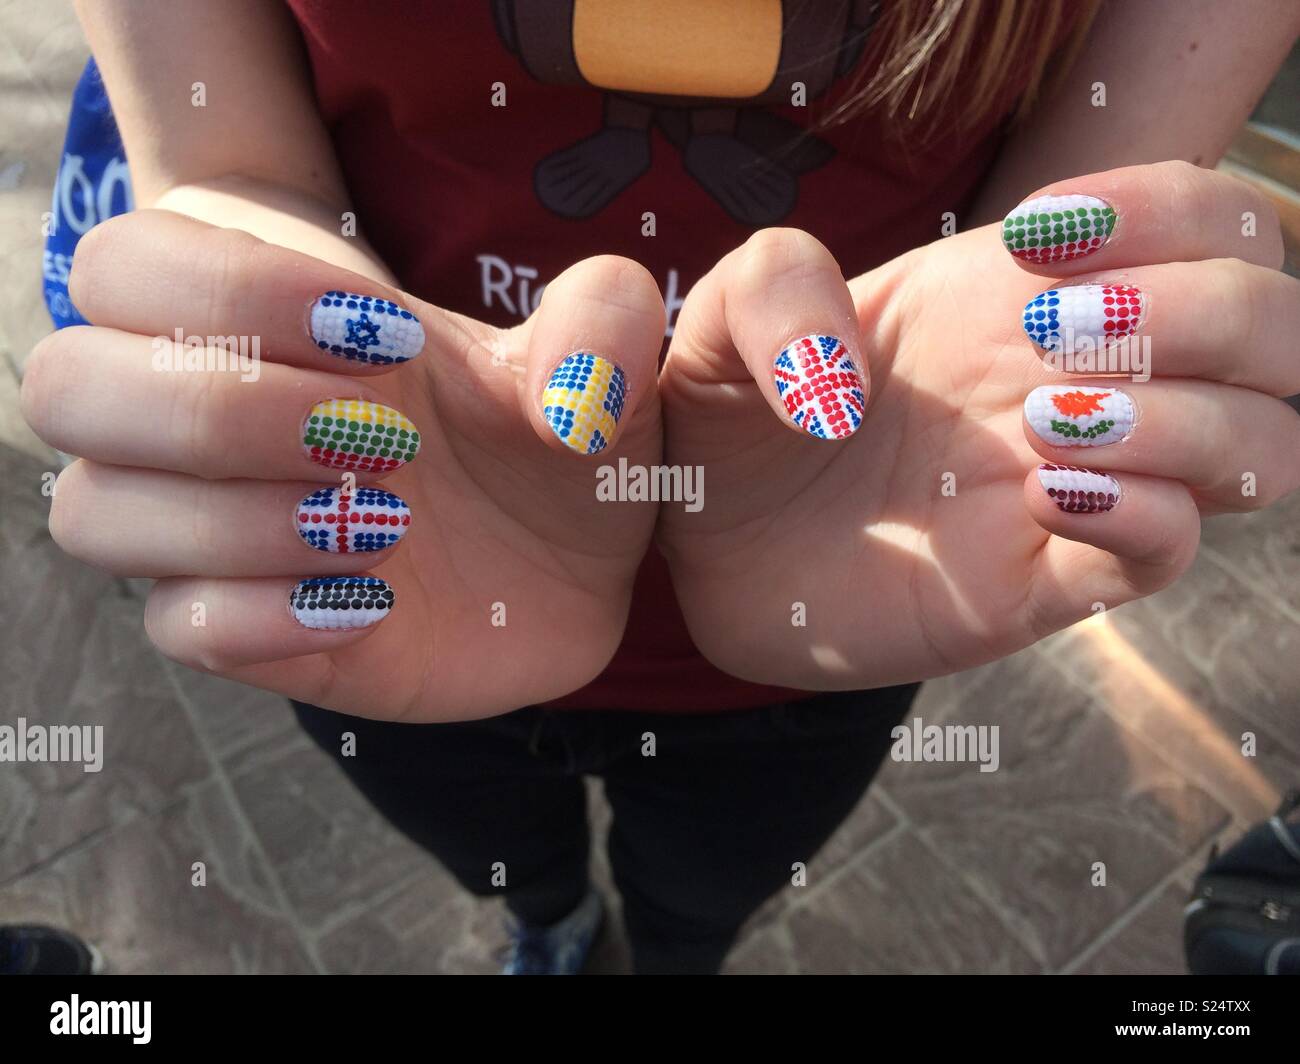 Finally finished my British Nails #nails #nailsart | London nails, Minimal nails  art, British flag nails